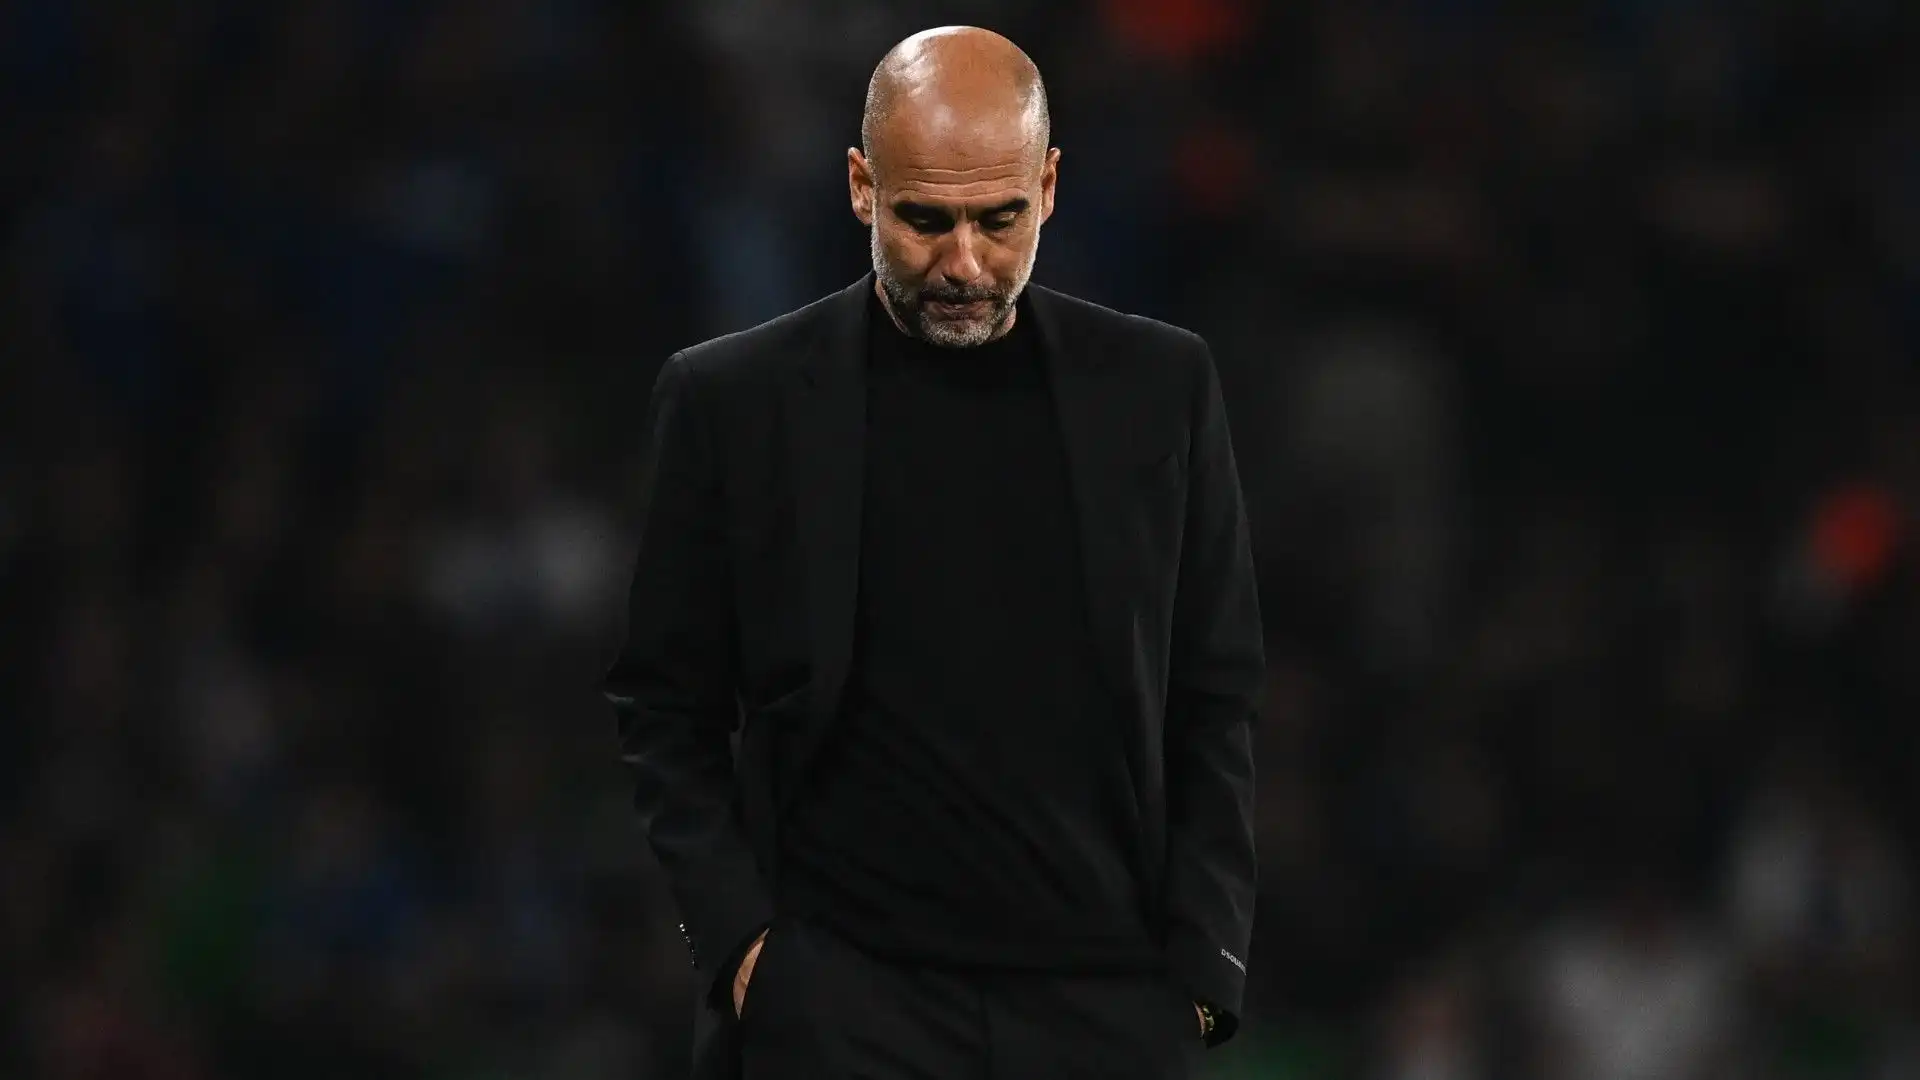 L'allenatore del Manchester City salterà le prossime due partite a causa di un piccolo intervento alla schiena